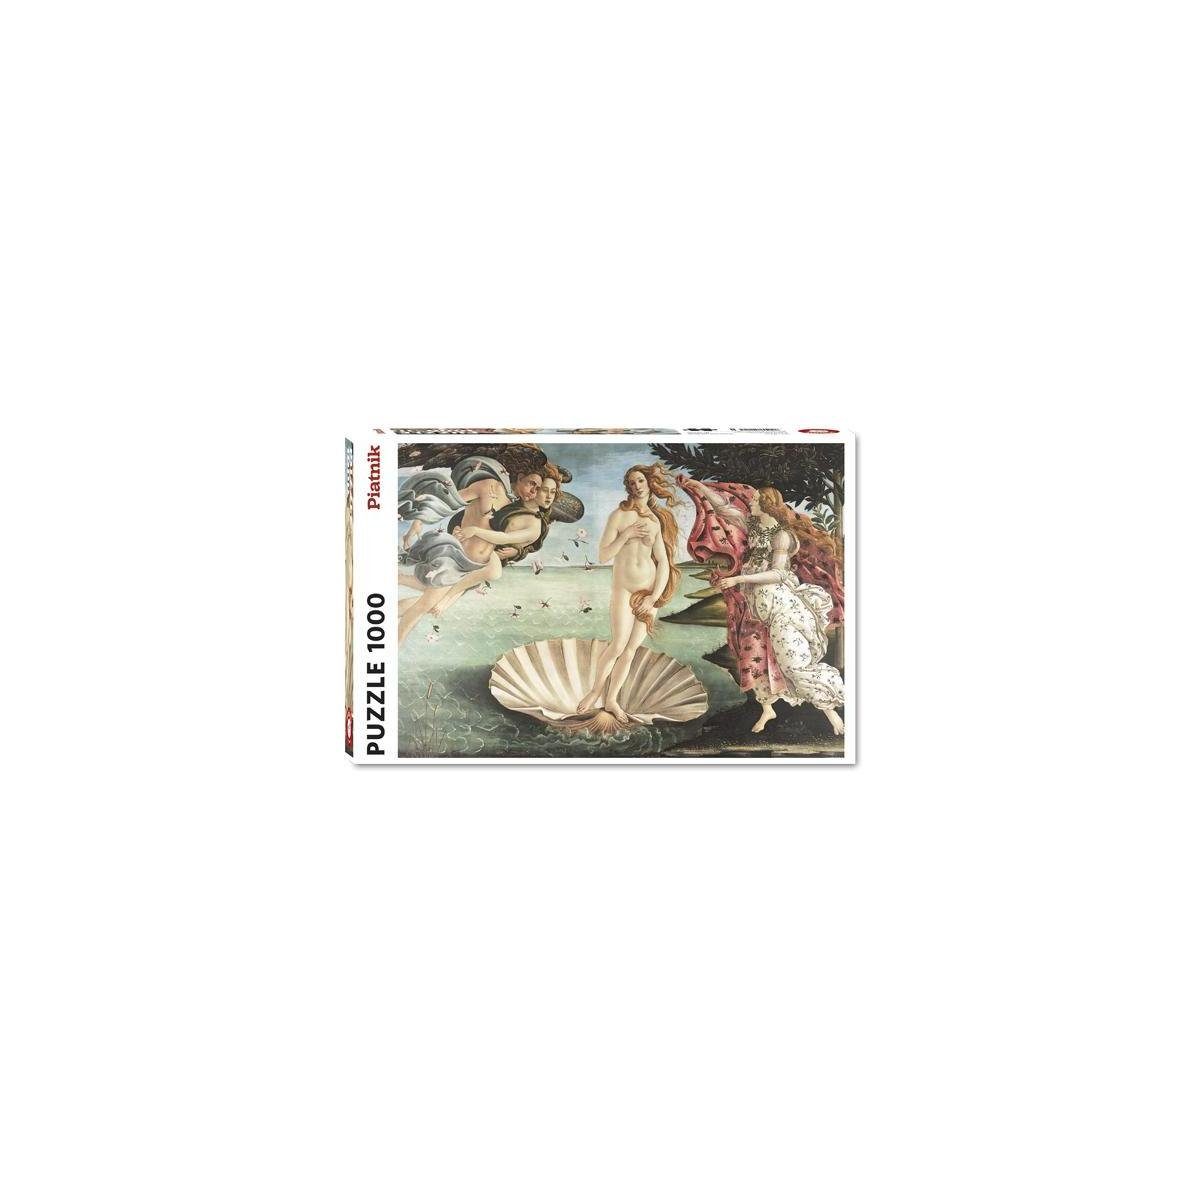 Piatnik Puzzle 5421 - Boticelli: Die Geburt der Venus - Puzzle, 1000 Teile, 1000 Puzzleteile